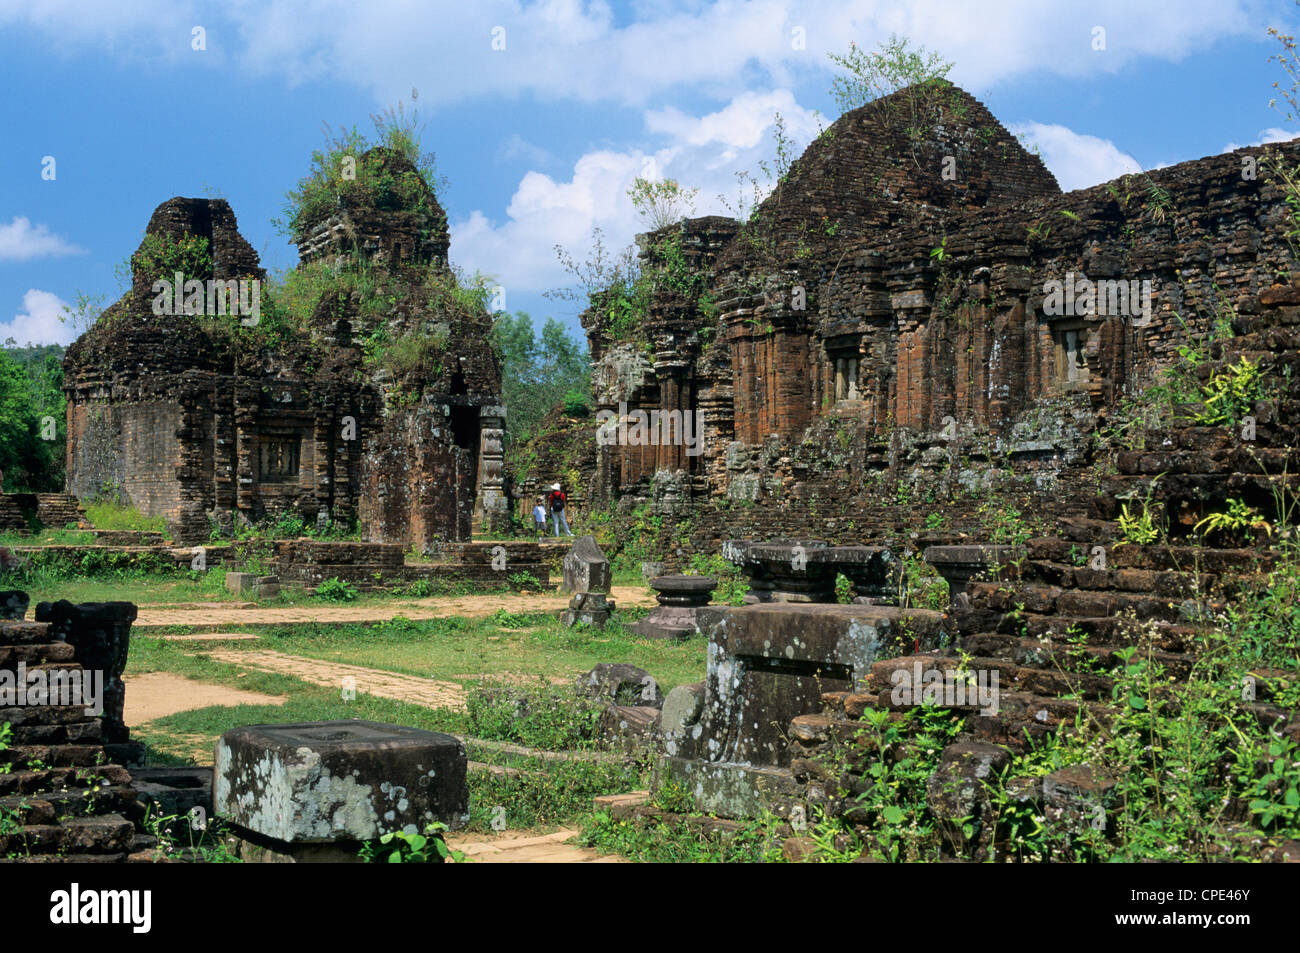 Cham rovine, mio figlio, Sito Patrimonio Mondiale dell'UNESCO, vicino a Hoi An, South Central Coast, Vietnam, Indocina, Asia sud-orientale, Asia Foto Stock